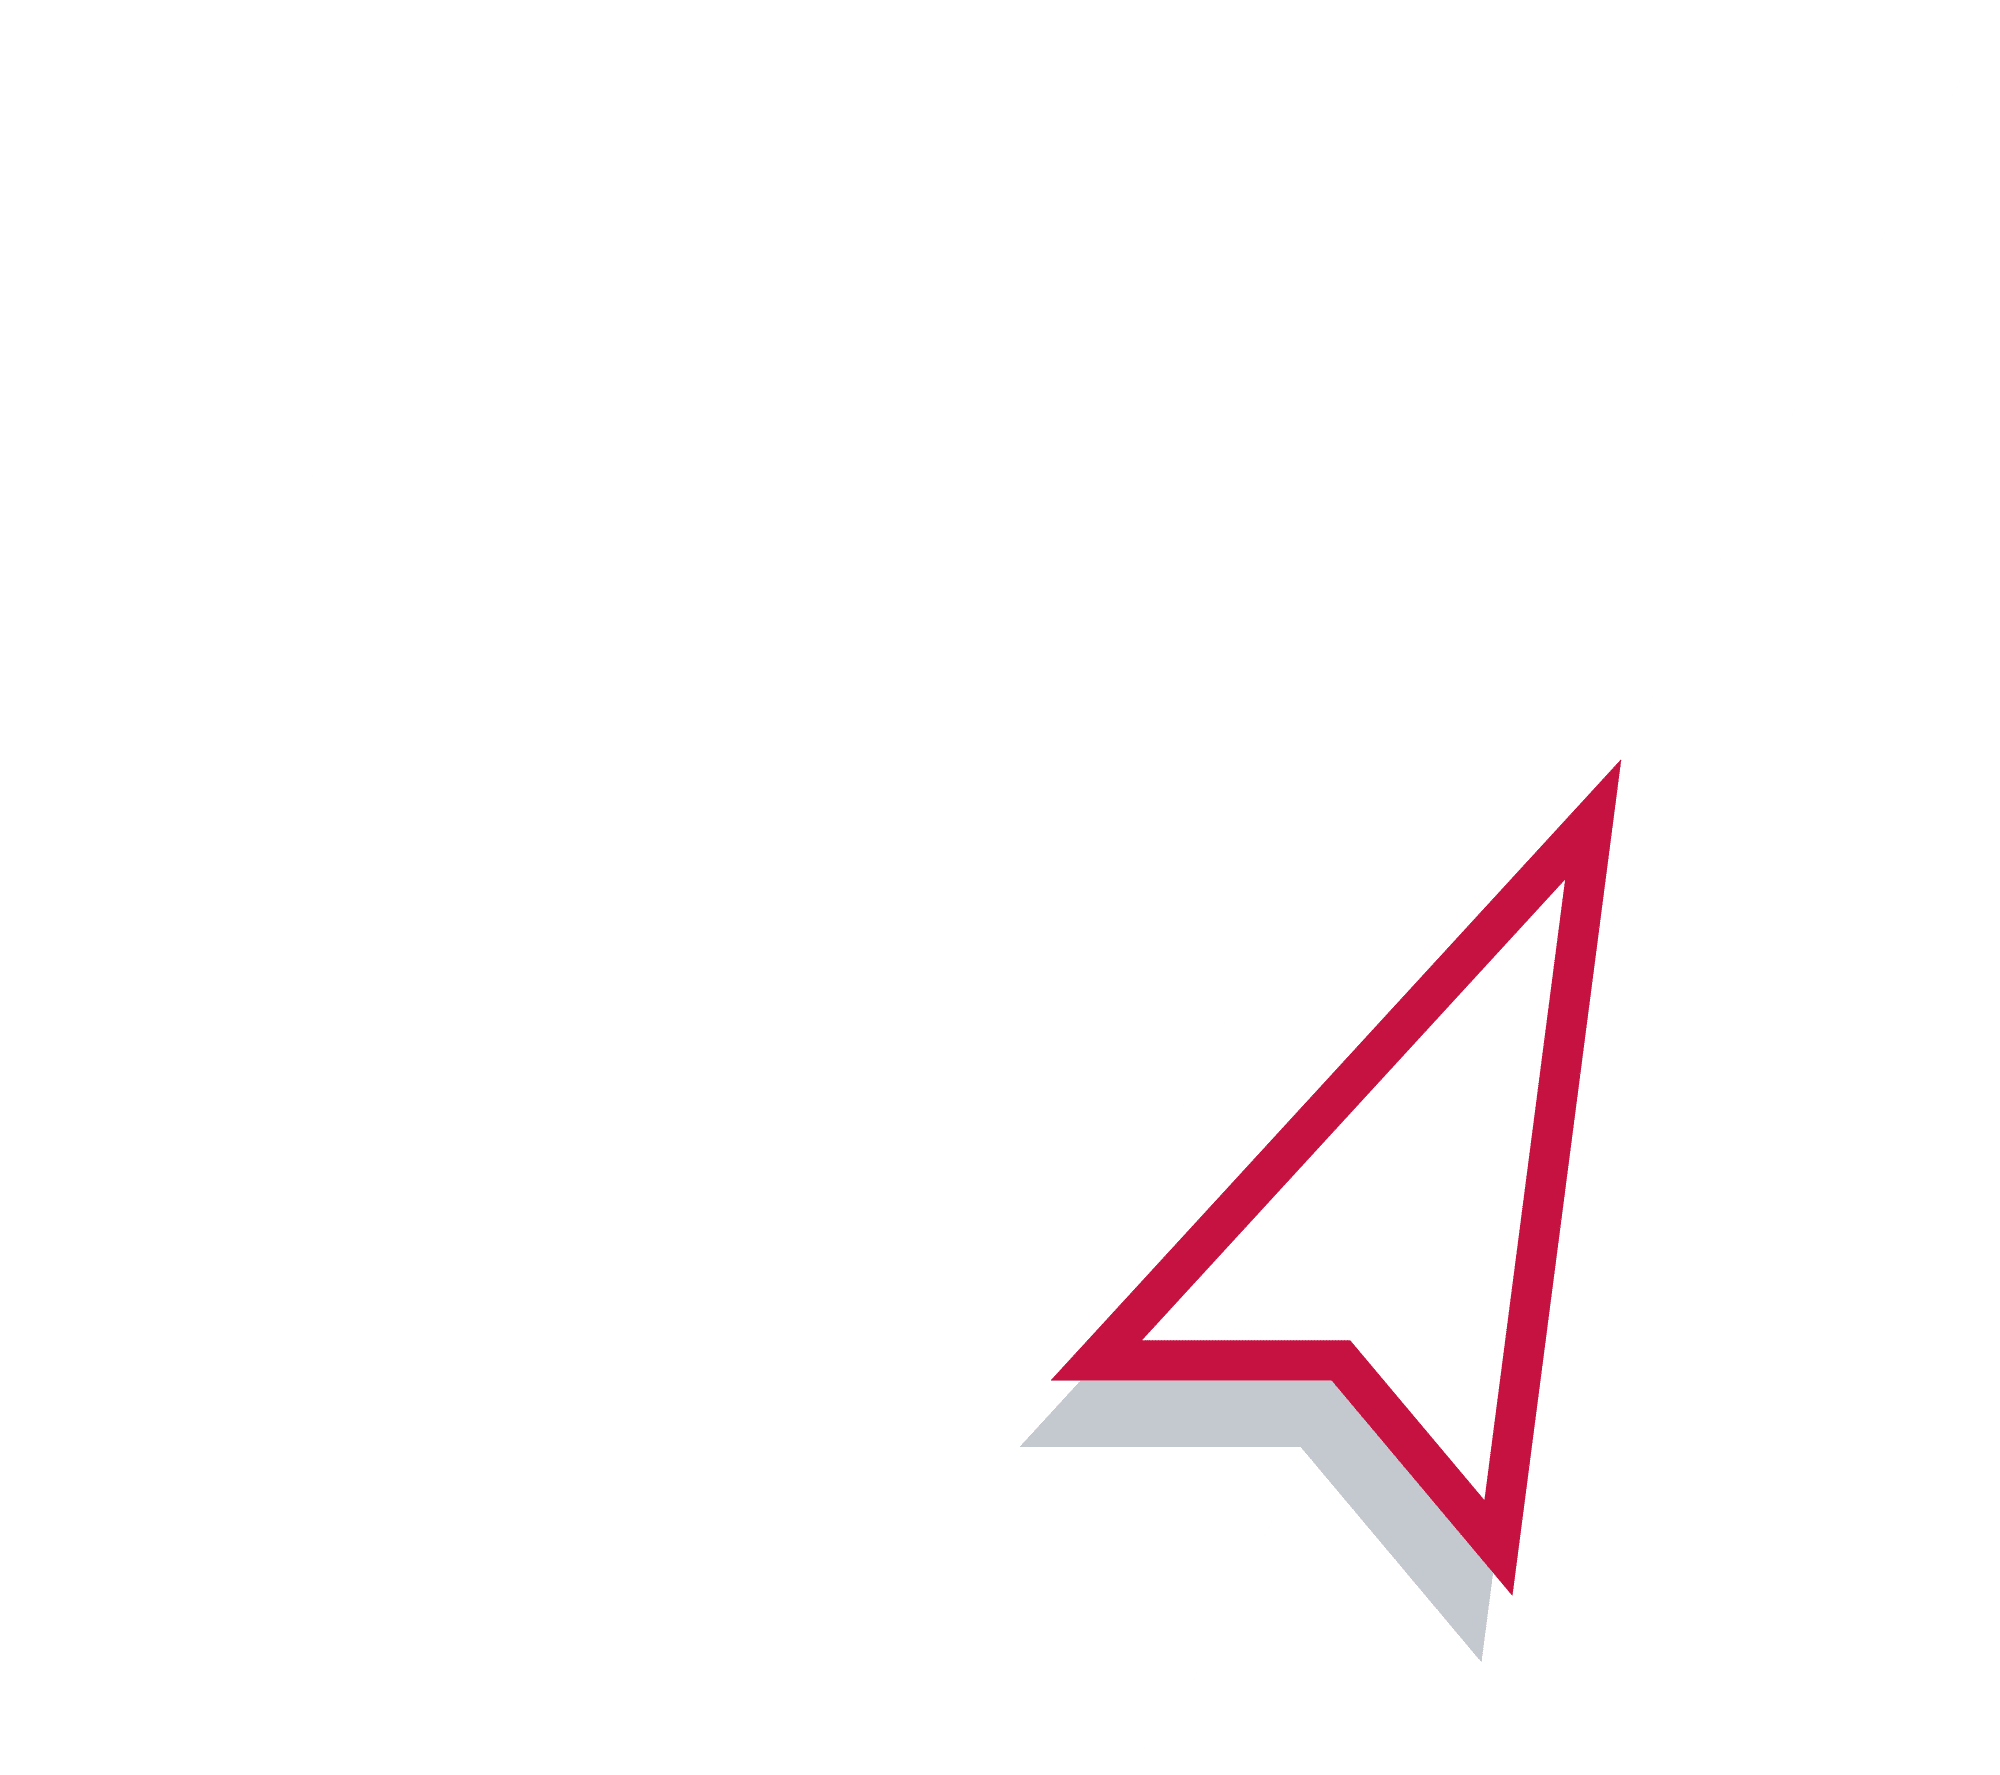 Association G7 | Organisme de formation en sécurité, Restauration et Informatique